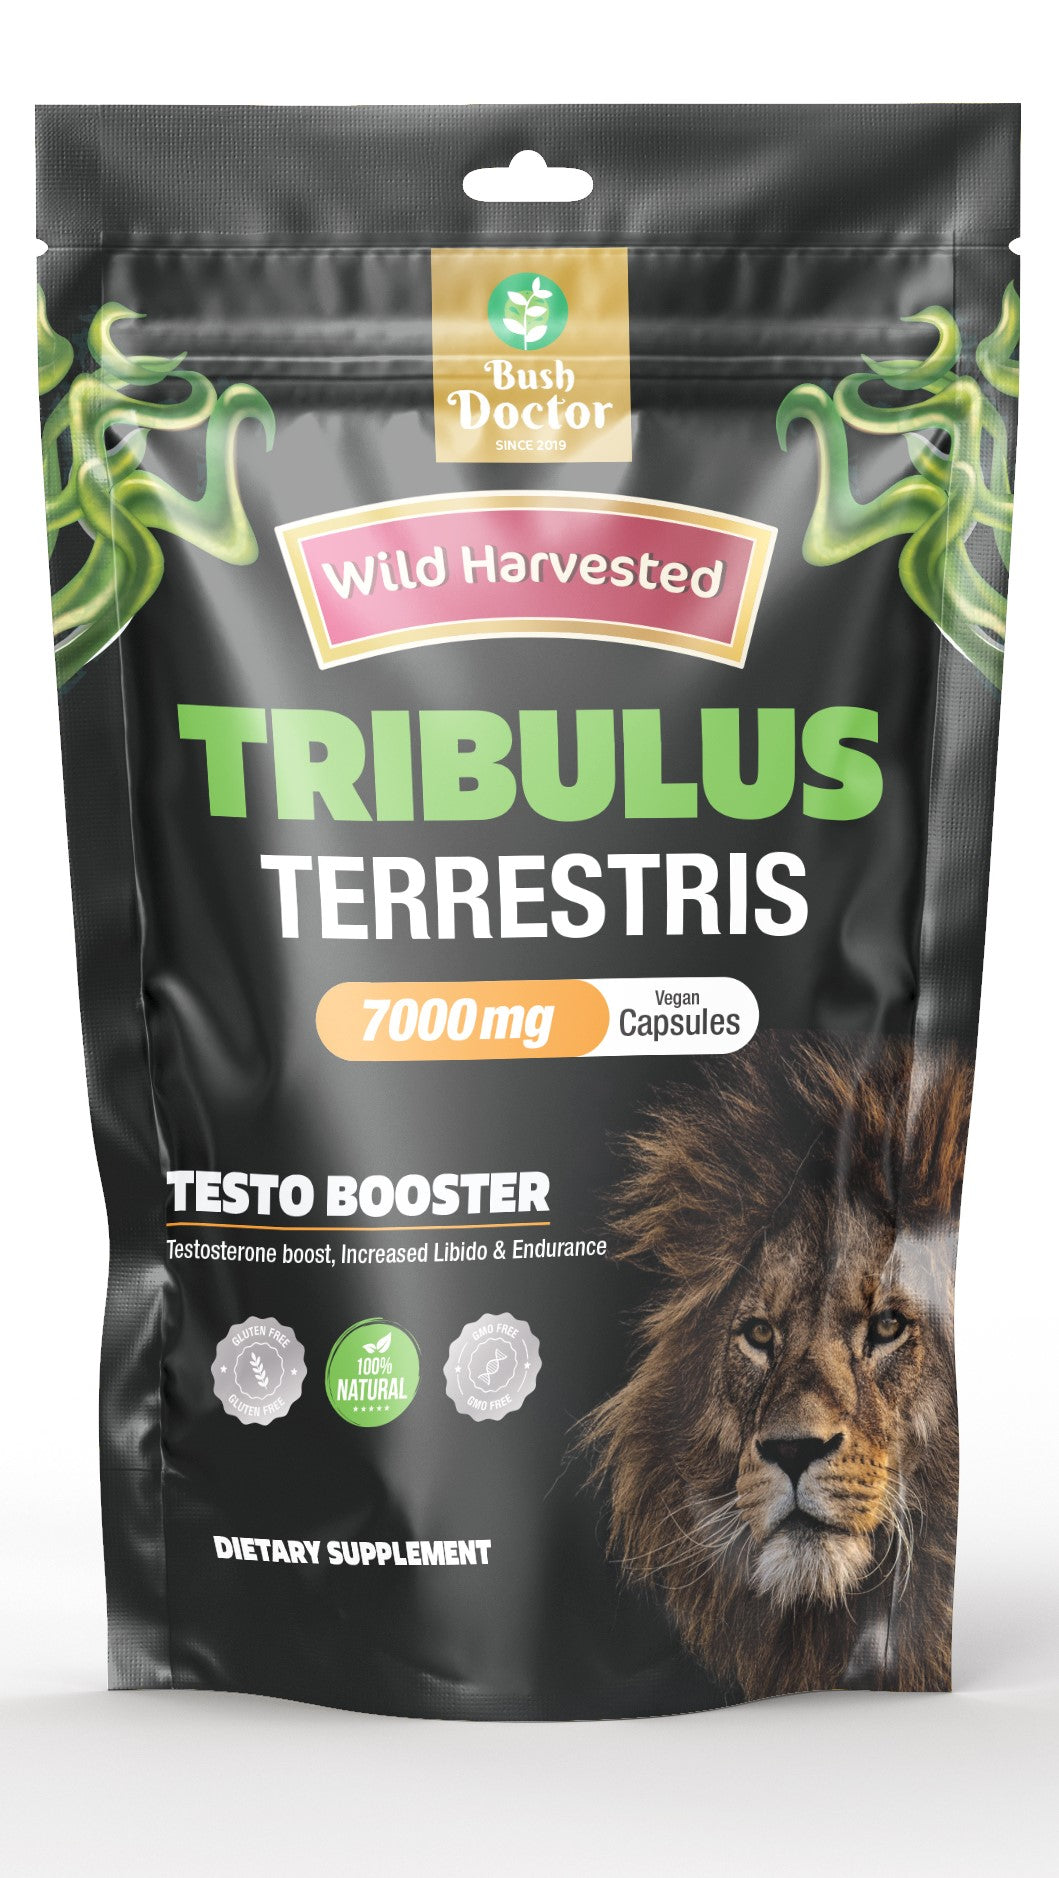 Premium Grade Tribulus Terrestris - Boost Energy, Stamina, and Performance! Capsules